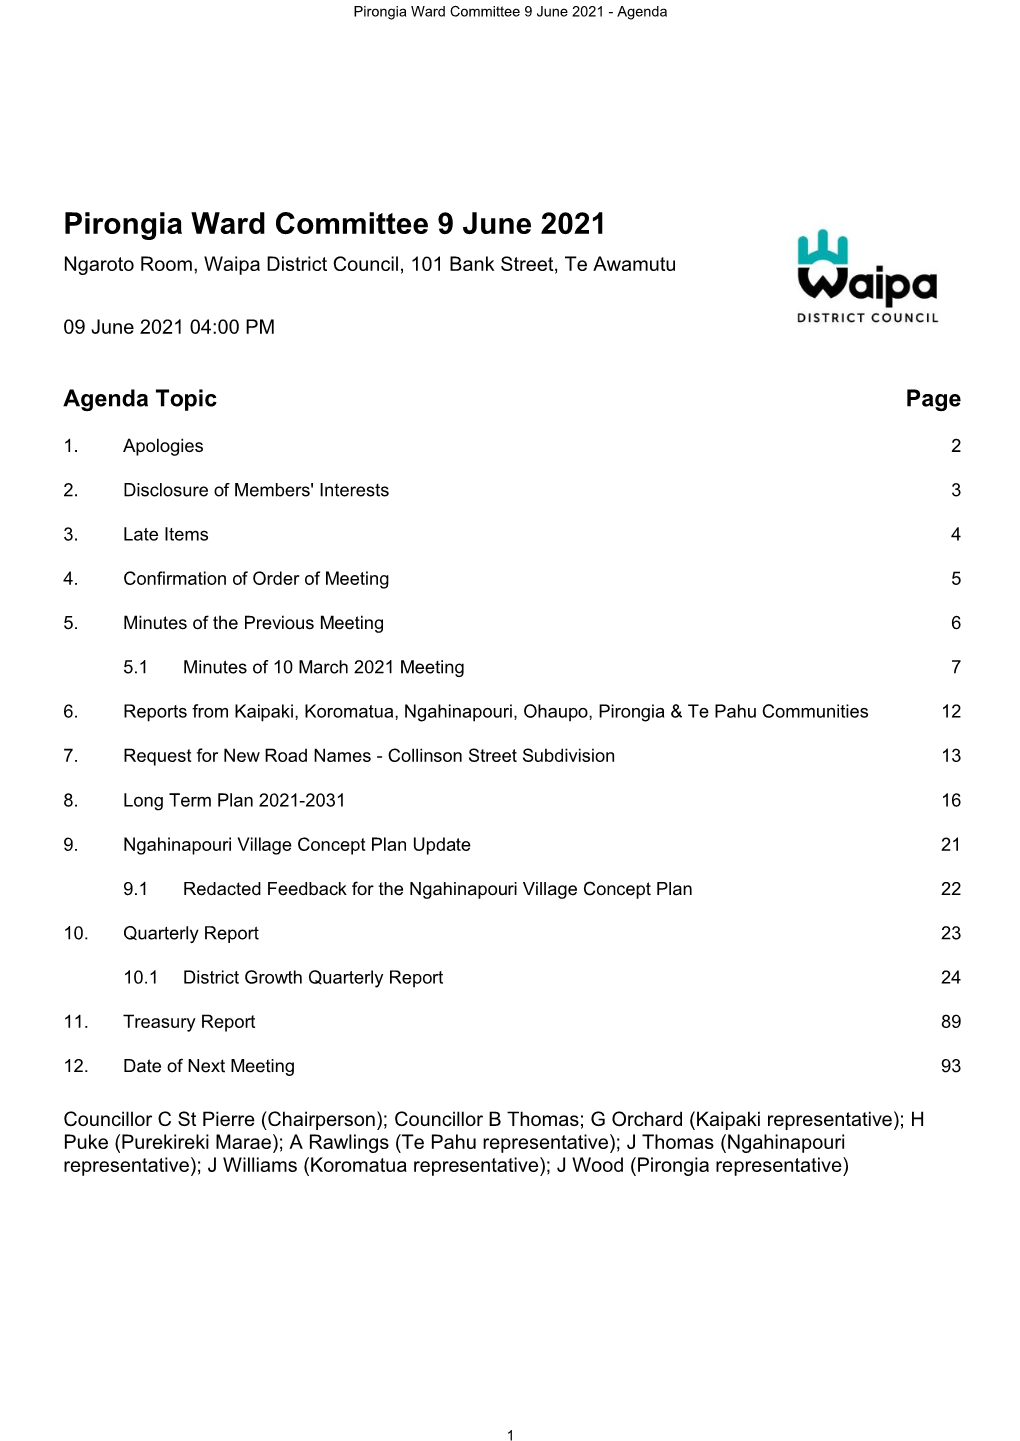 Pirongia Ward Committee Agenda 9 June 2021